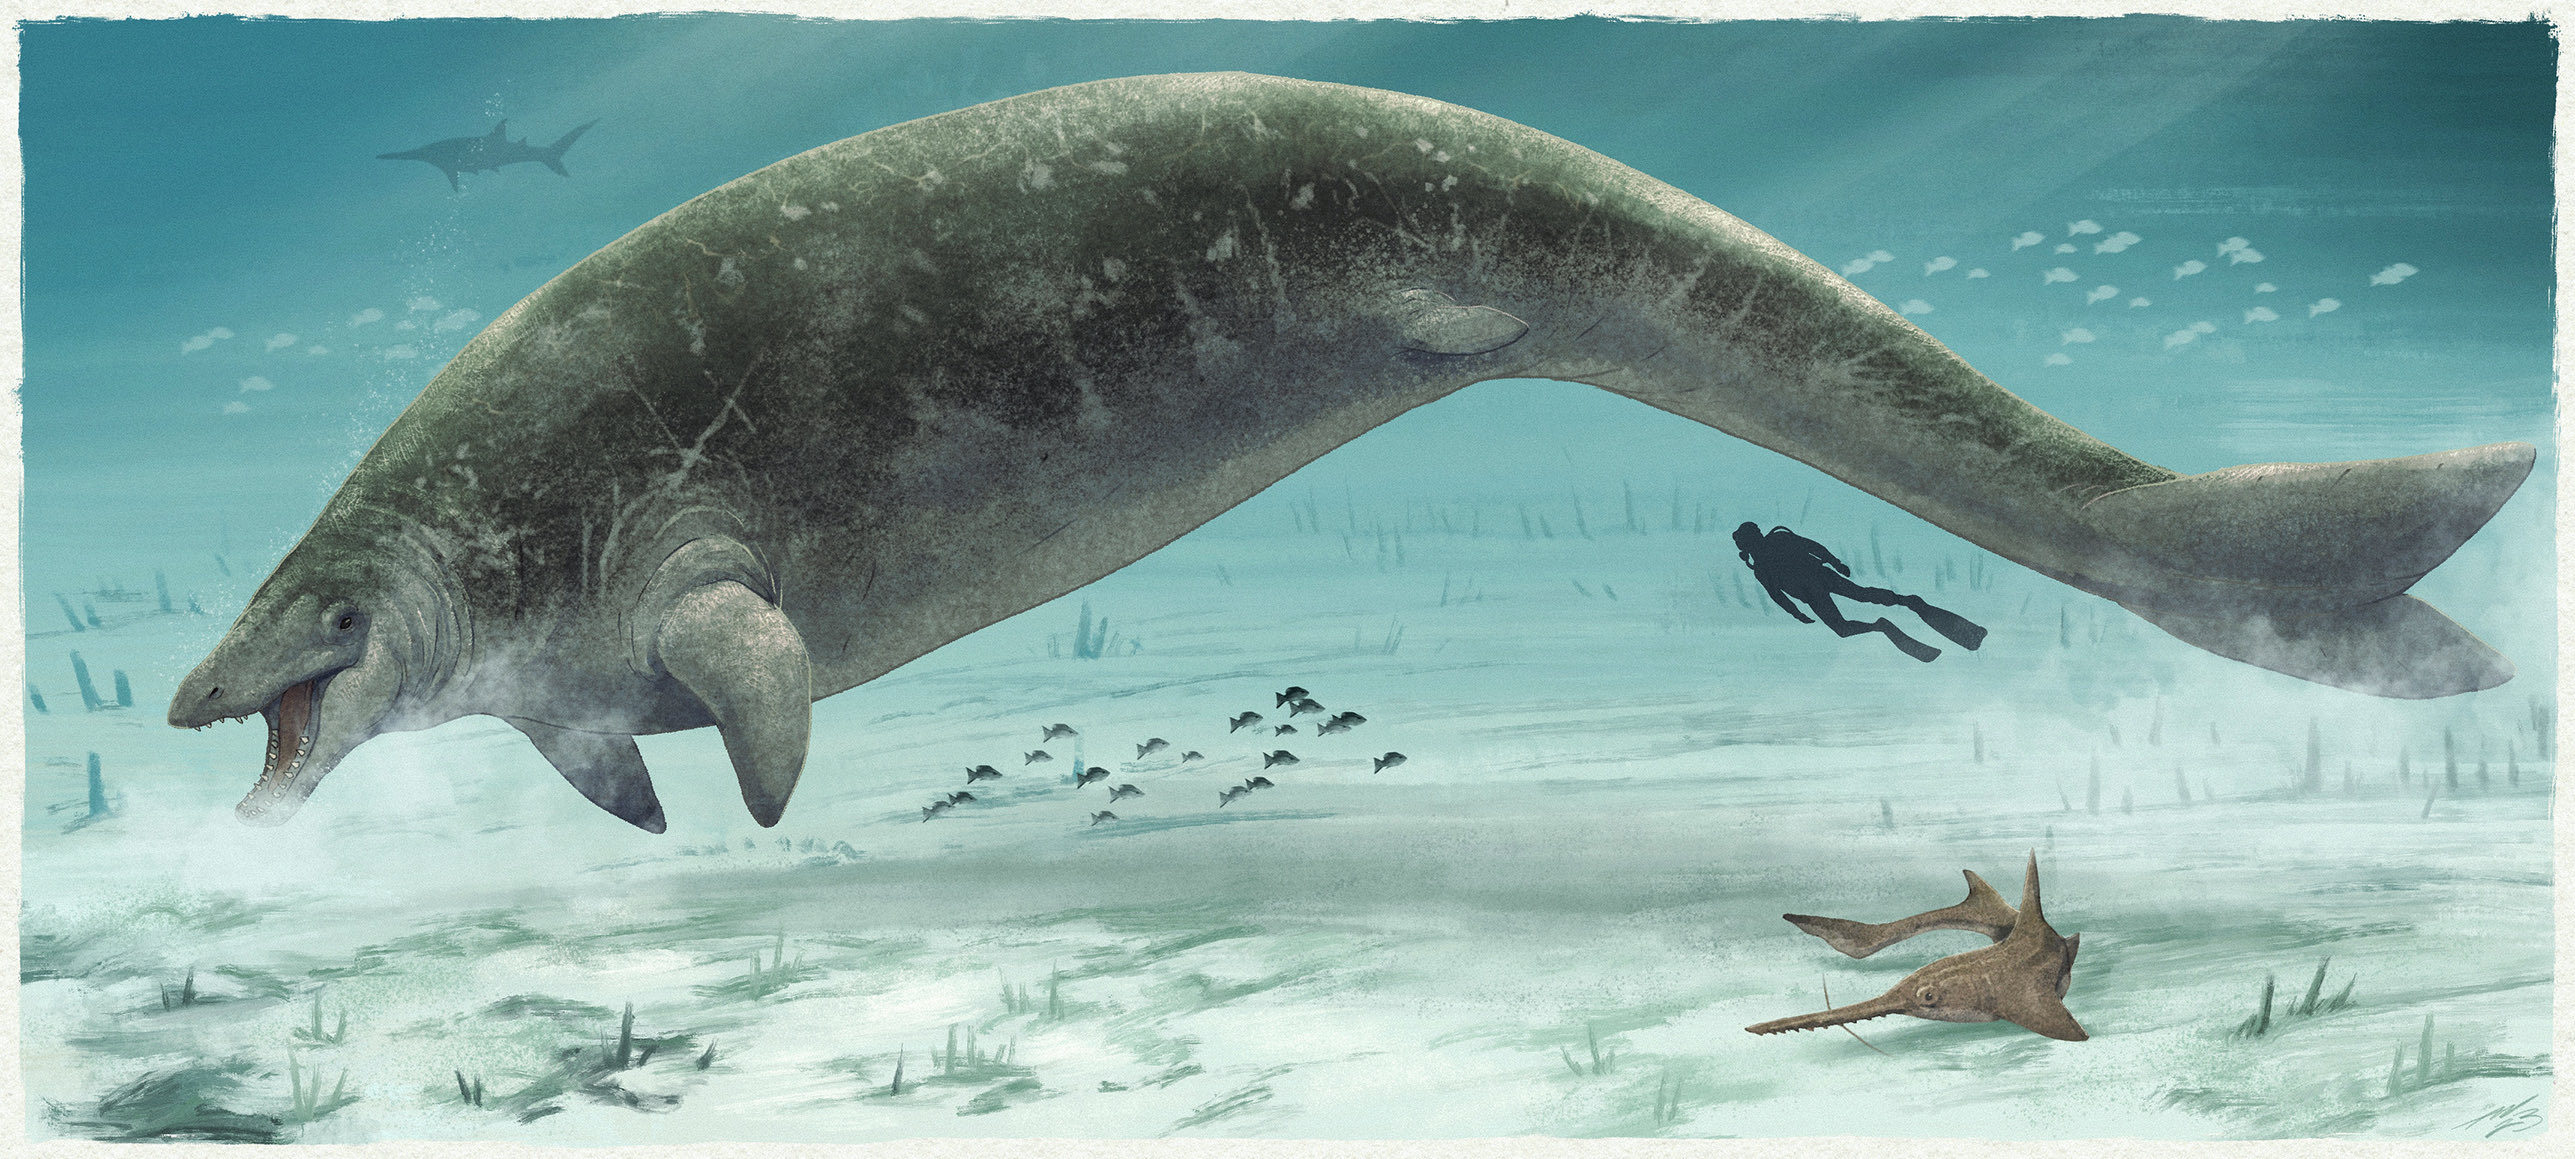 Representação da baleia pré-histórica. (Imagem: Adamworks)